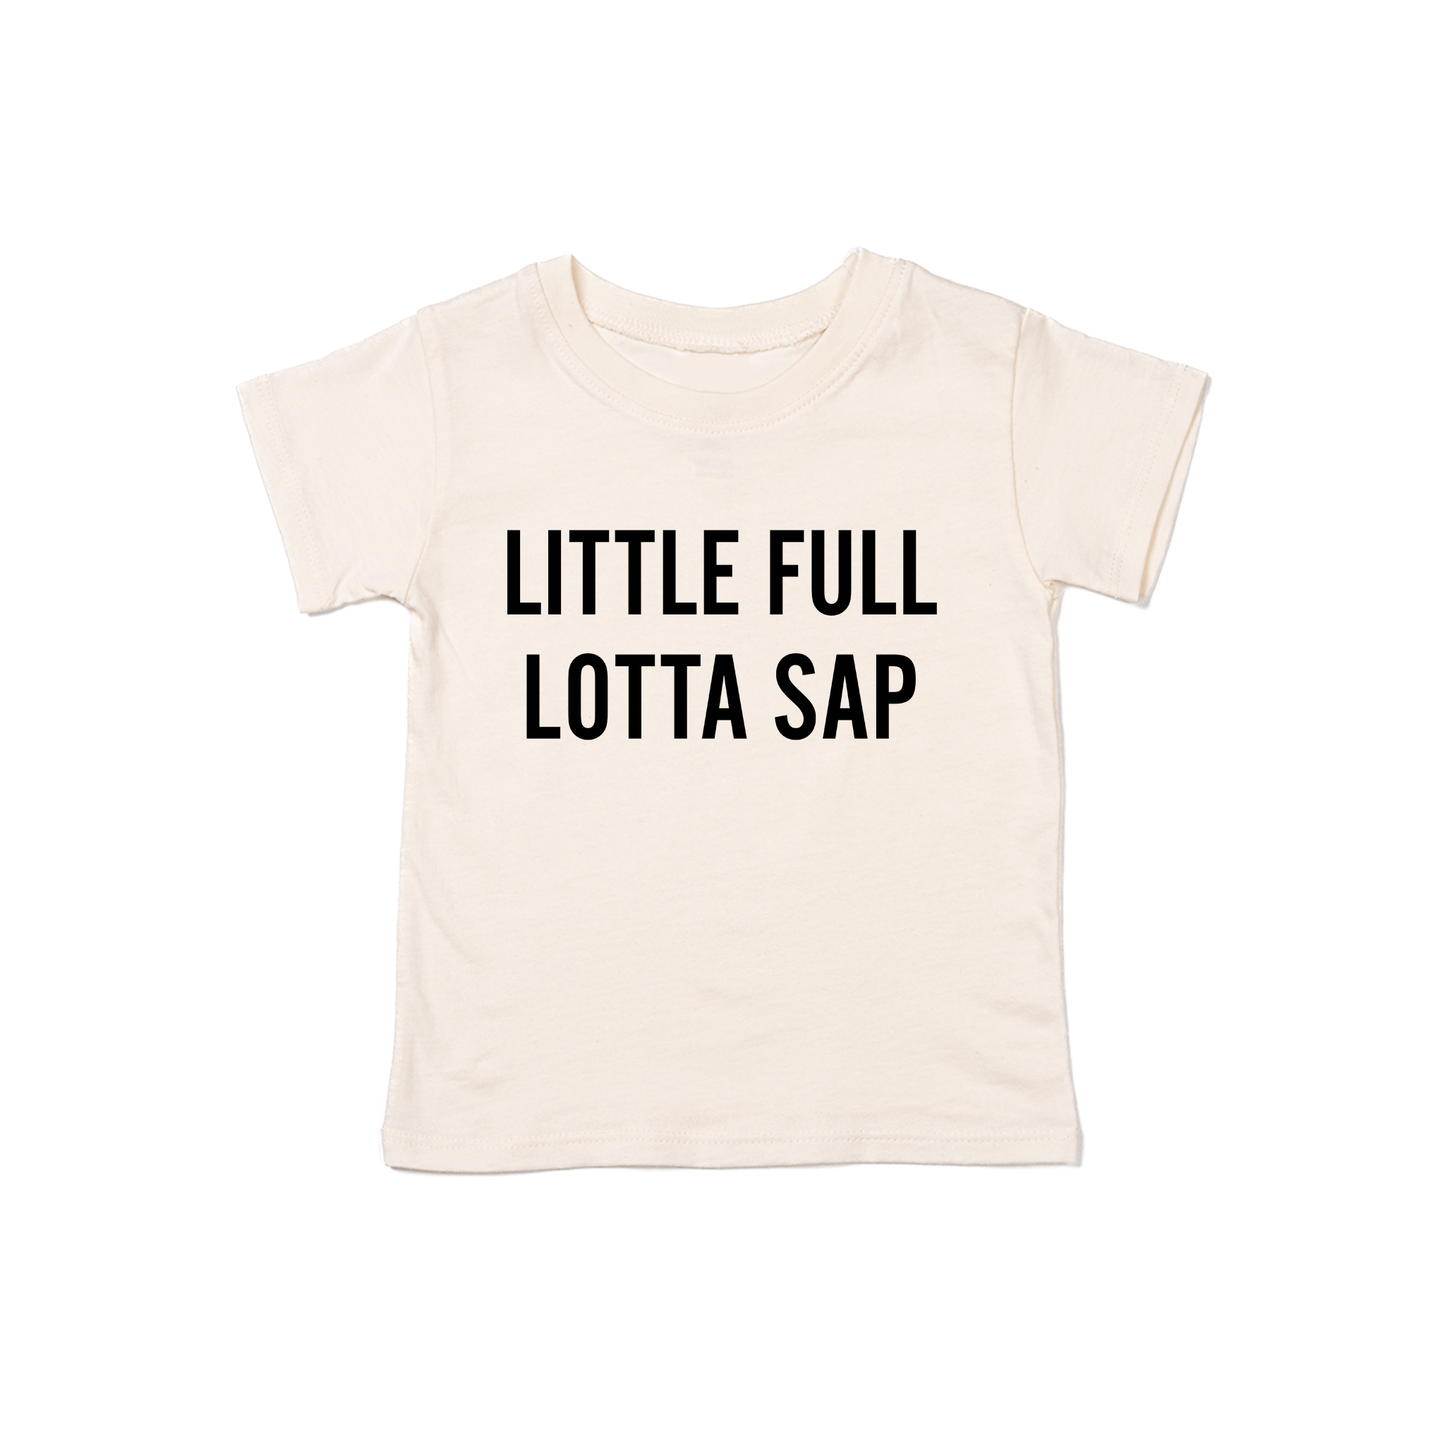 Little Full Lotta Sap (Black) - Kids Tee (Natural)